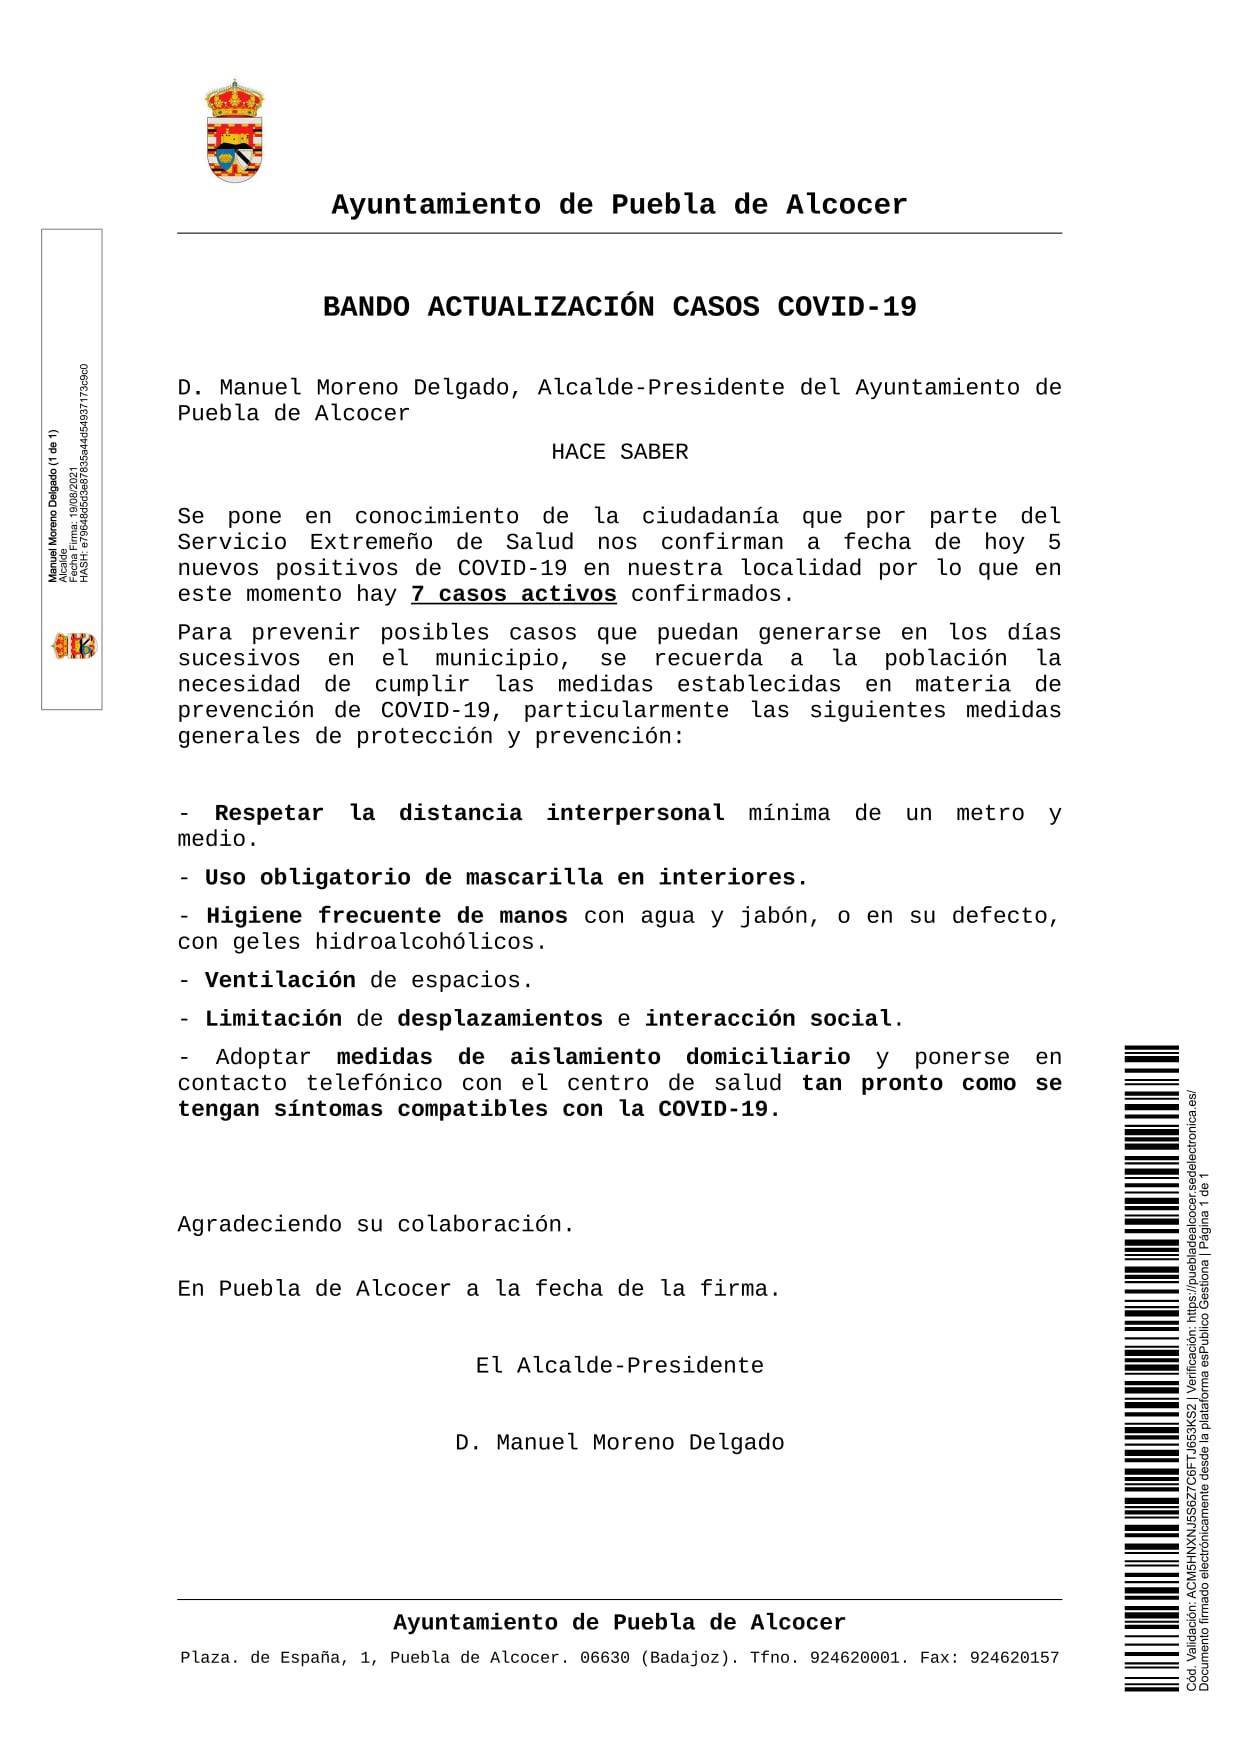 5 nuevos casos positivos de COVID-19 (agosto 2021) - Puebla de Alcocer (Badajoz)